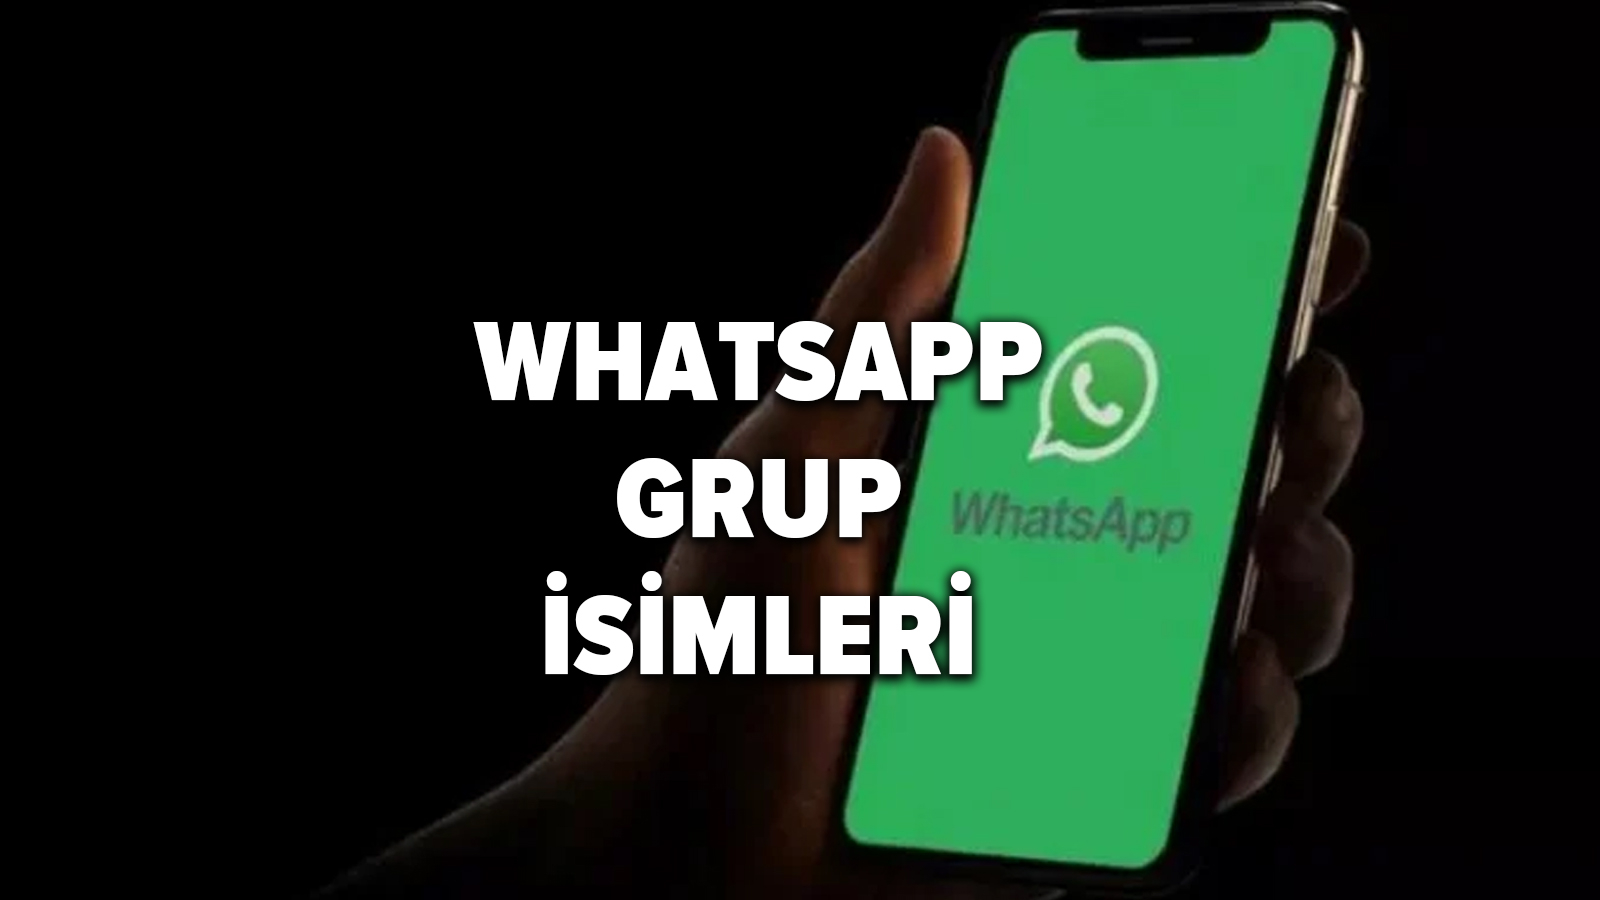 WhatsApp grup isimleri: Güldüren, dikkat çeken komik ve yaratıcı WhatsApp grup isimleri